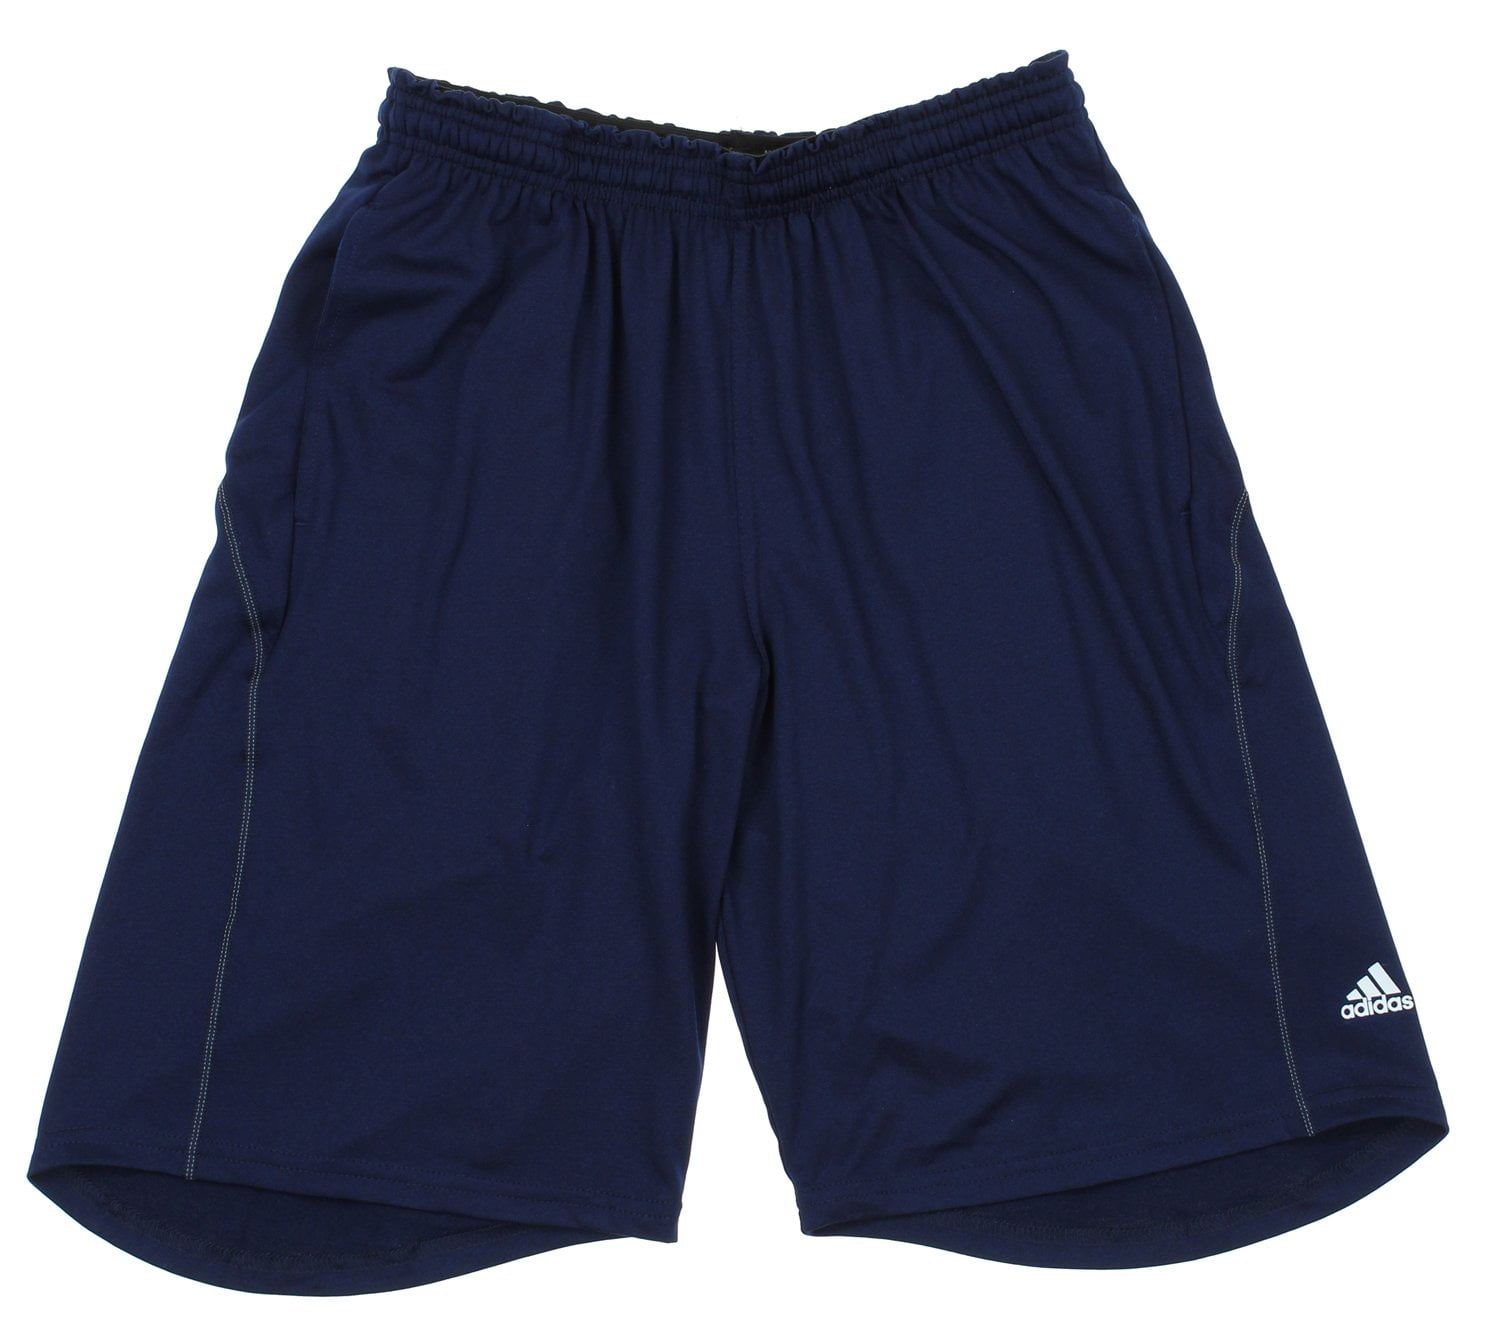 adidas mens navy blue shorts